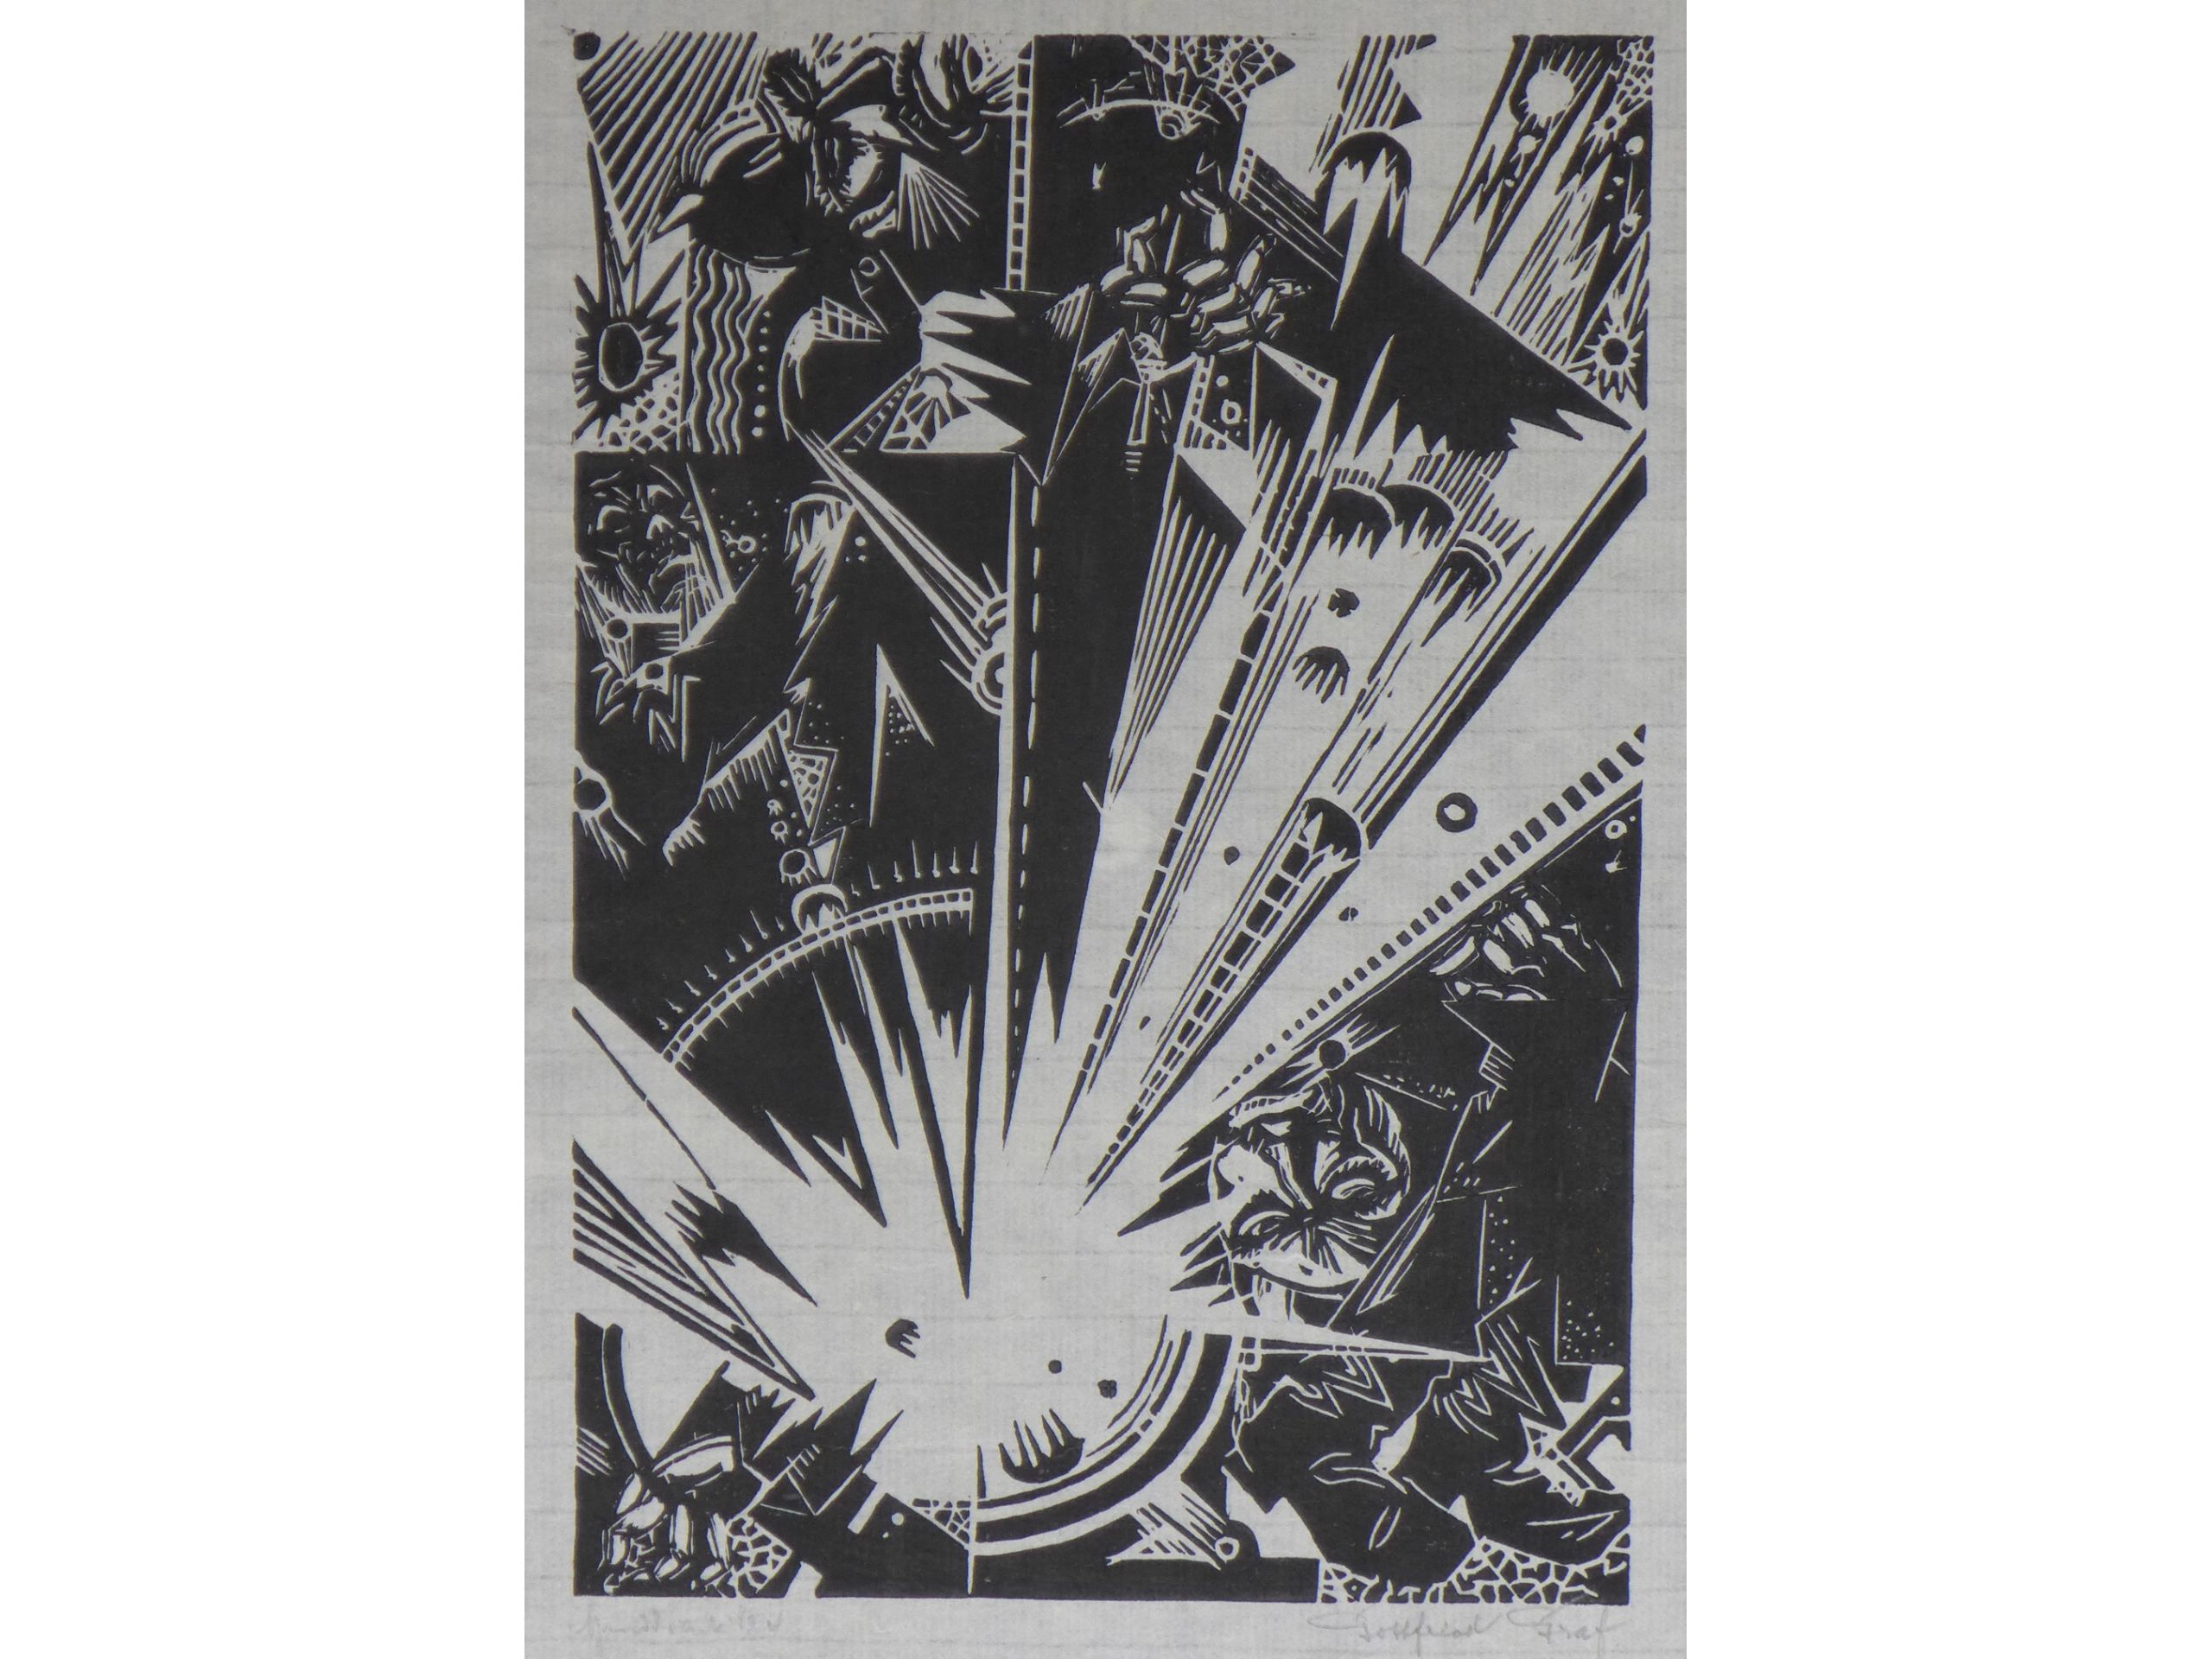 Gottfried Graf, 'Granate', 1916, Holzschnitt, signiert, 29 x 20 cm, 150 €